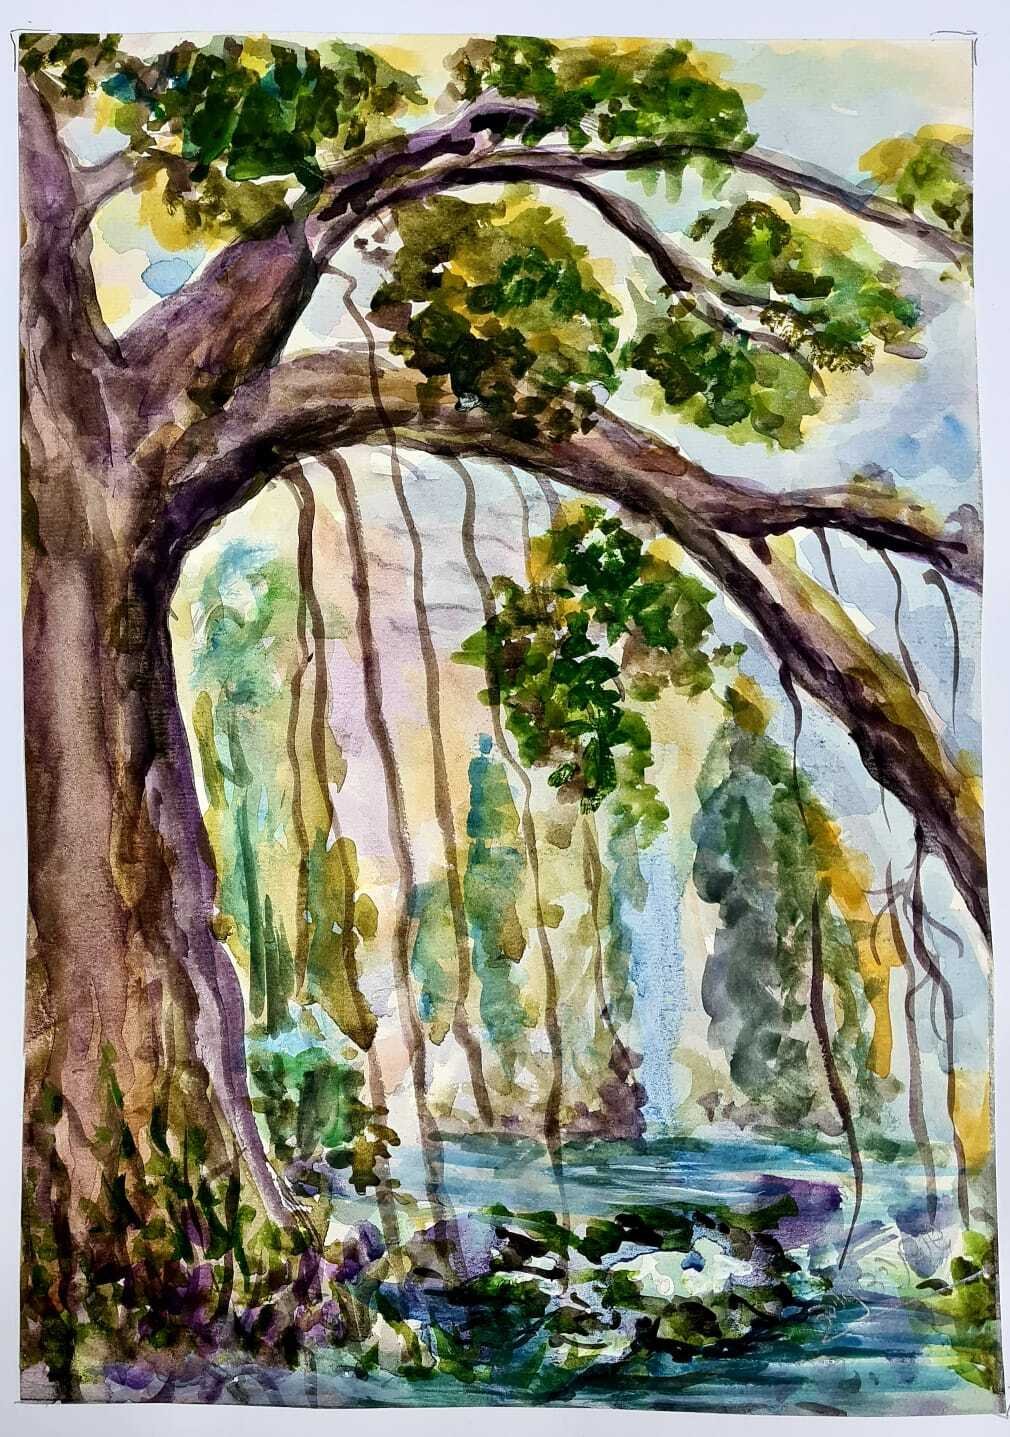 ציור מס. 55 - "יער ערפילי"